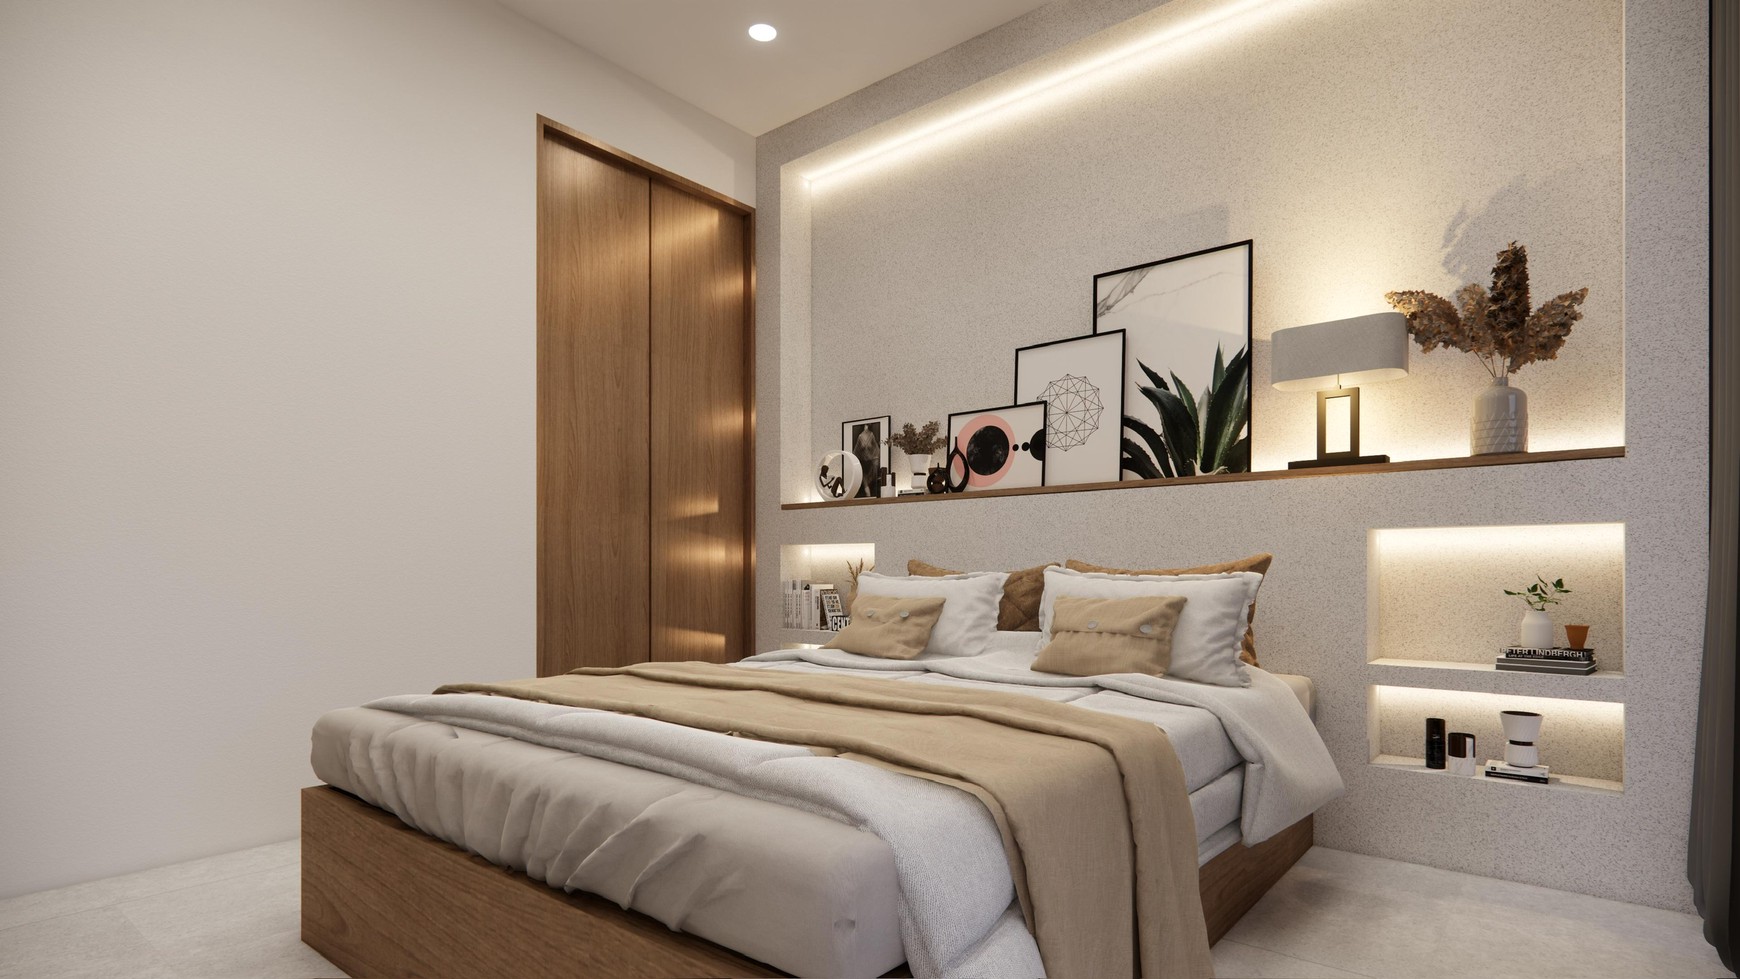 Leasehold - Modern Luxury Retreat in Batu Mejan, Canggu Your Dream Home Awaits!